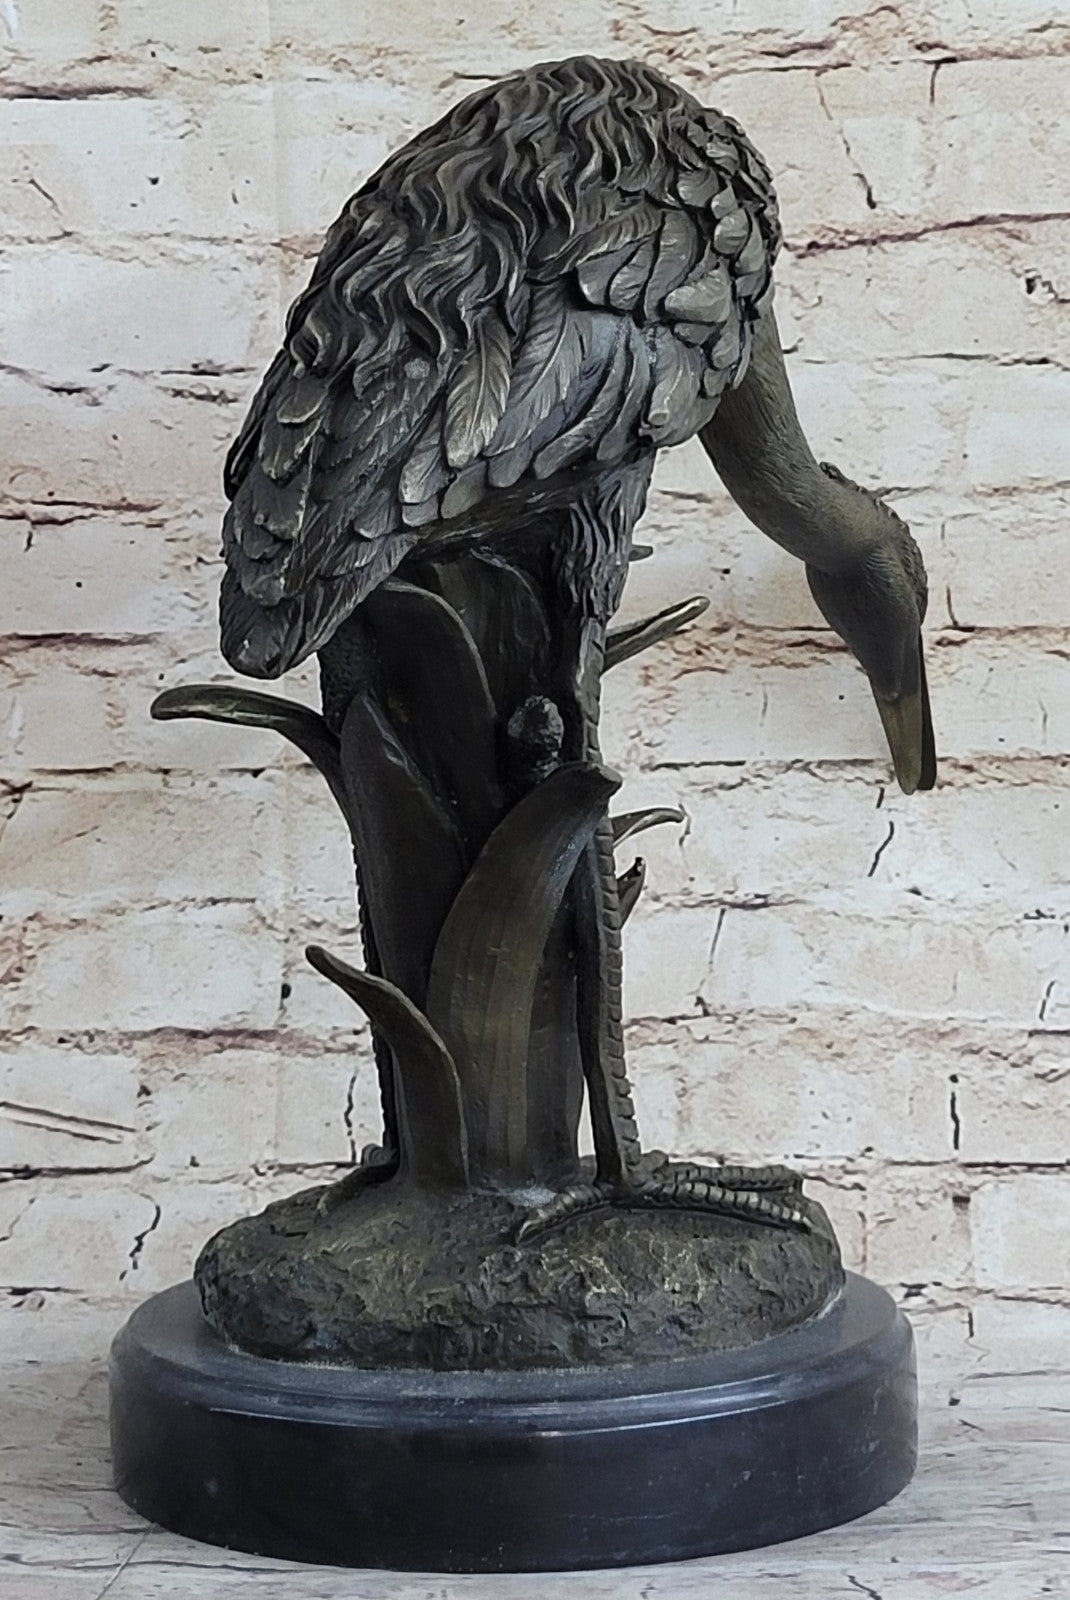 Handcrafted bronze sculpture SALE Mars Crane Backyard Indoor/Outdoor Large